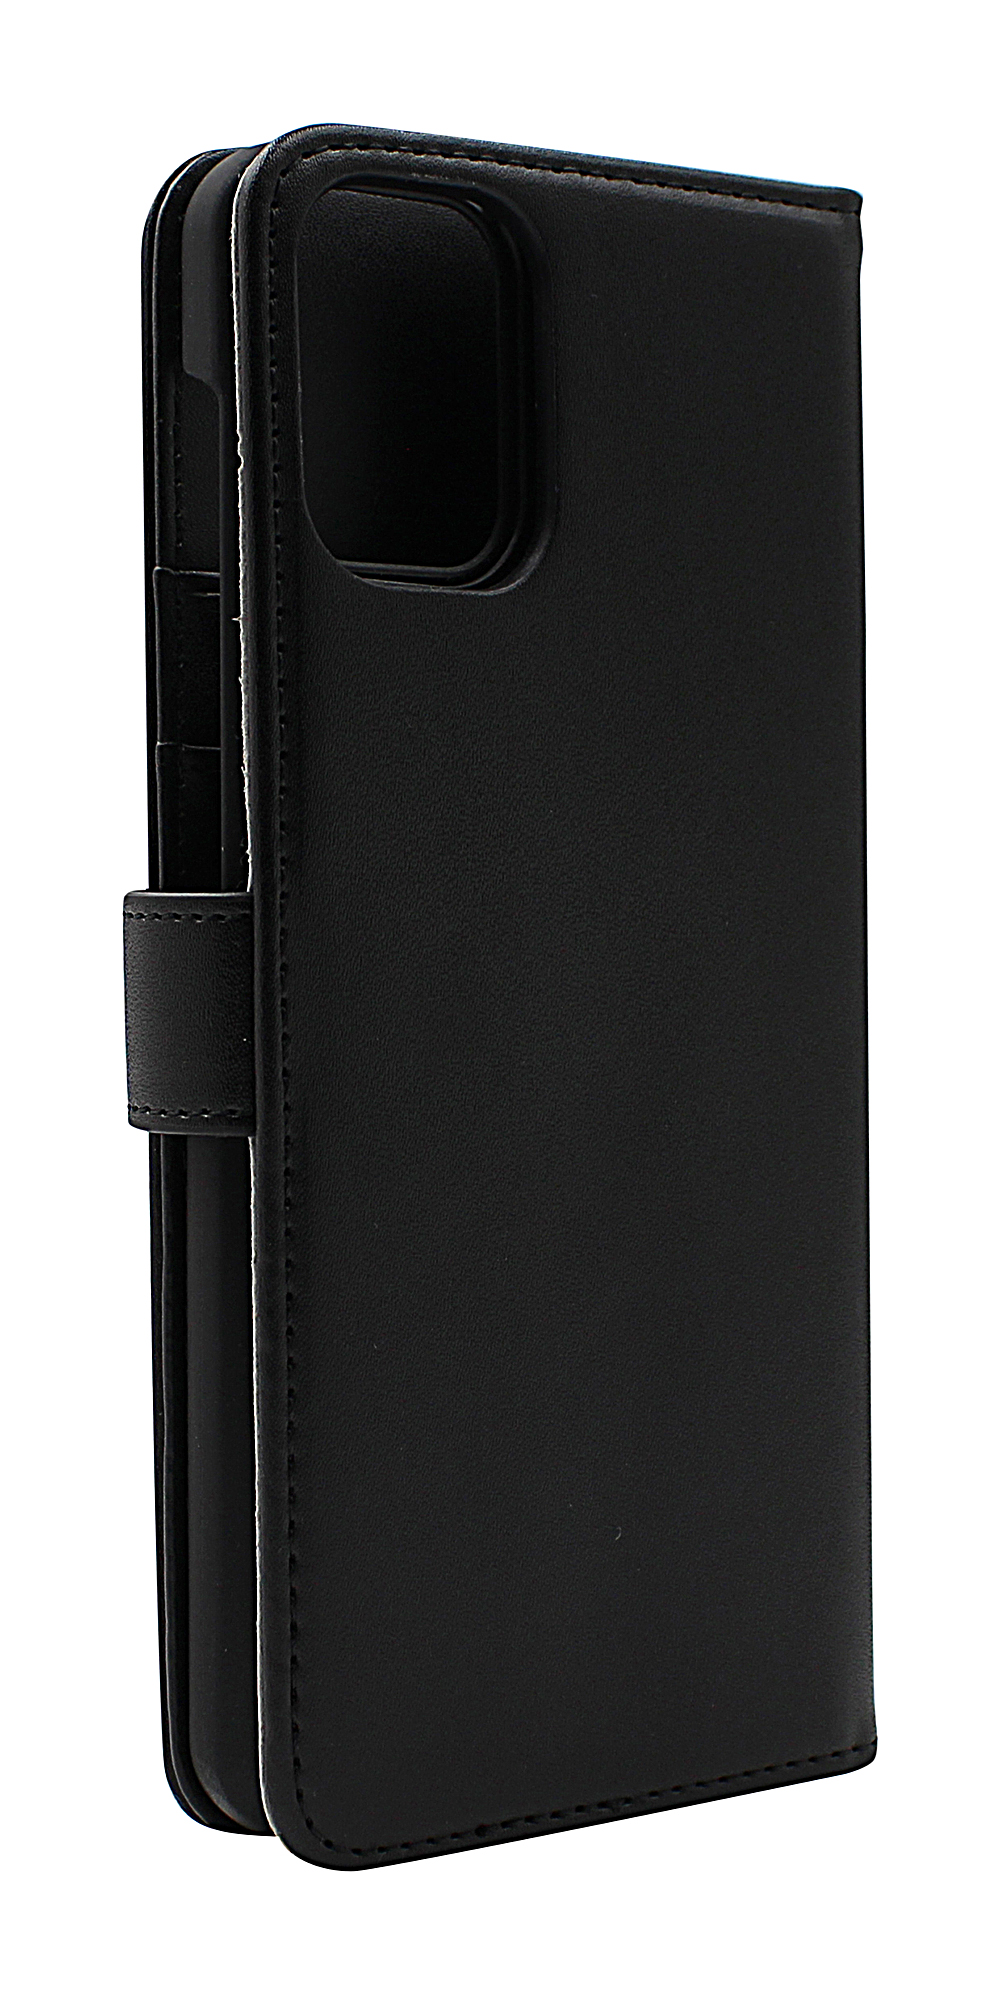 Skimblocker Magnet Wallet Motorola Moto G9 Plus